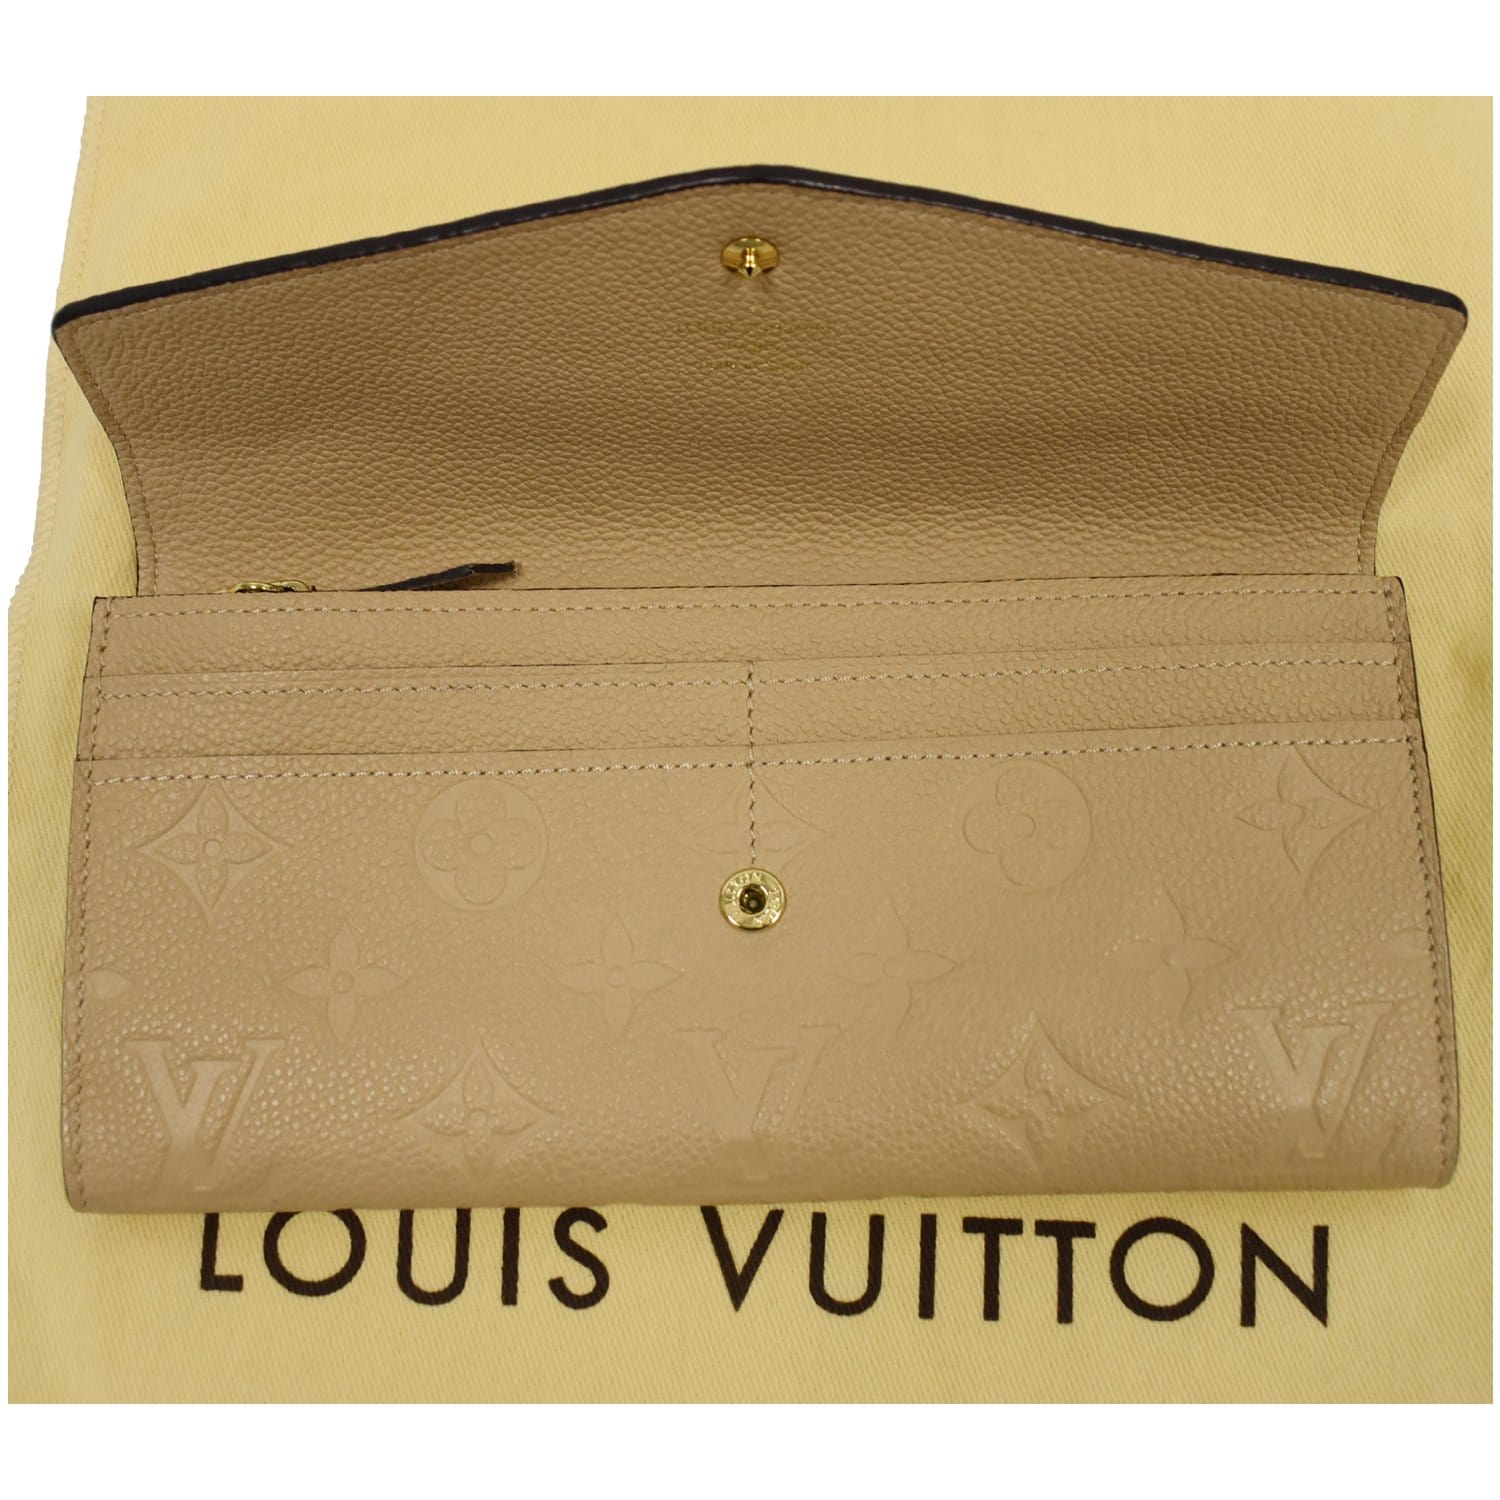 Replica Louis Vuitton M60735 Compact Curieuse Wallet Monogram Empreinte  Leather For Sale